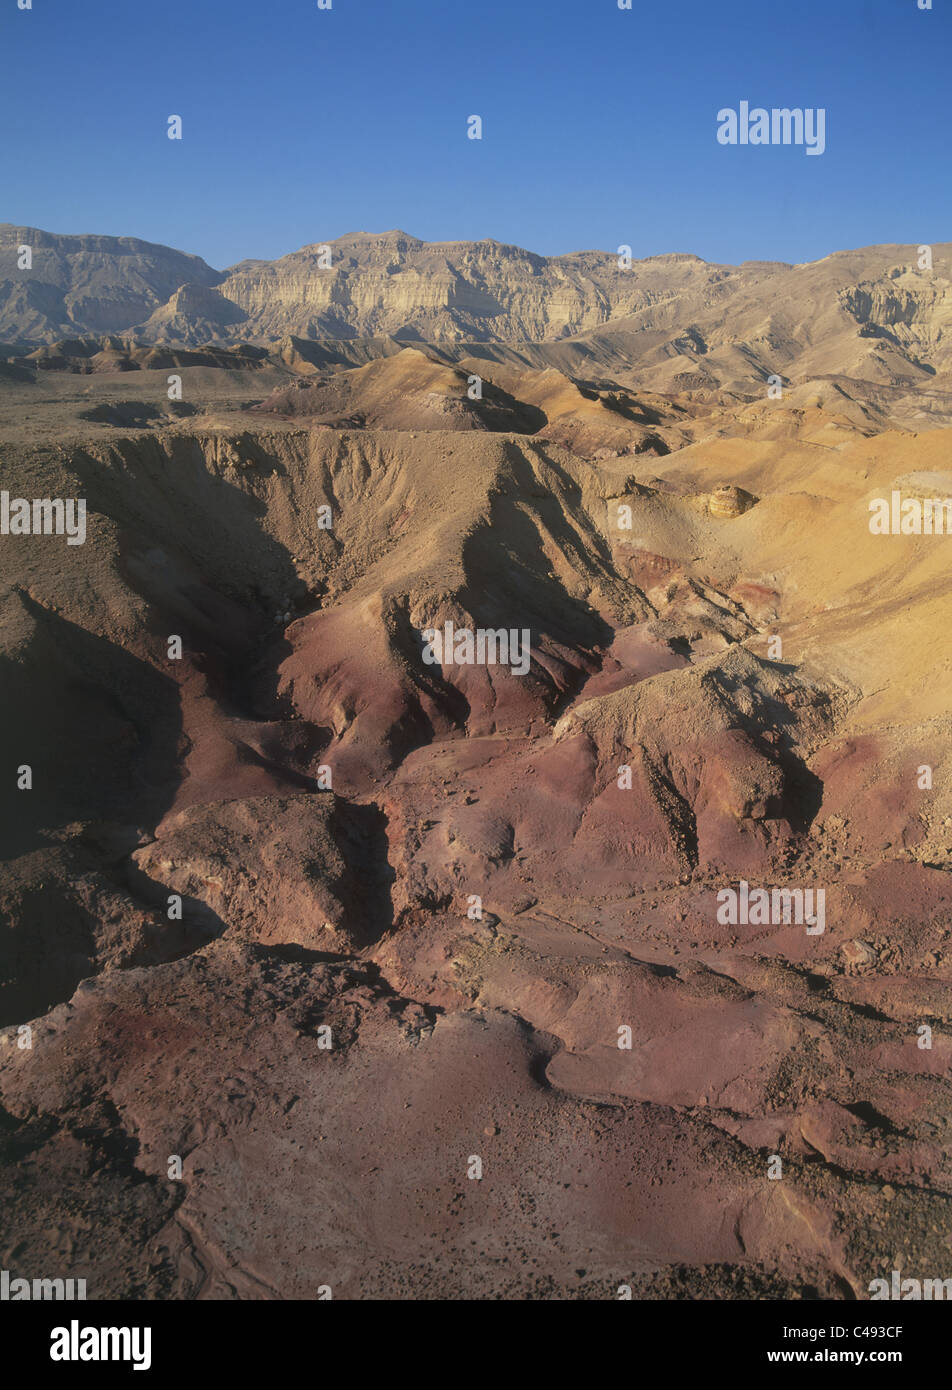 Fotografia aerea della pietra arenaria colorata in Ramon cratere nella Centrale del deserto del Negev Foto Stock